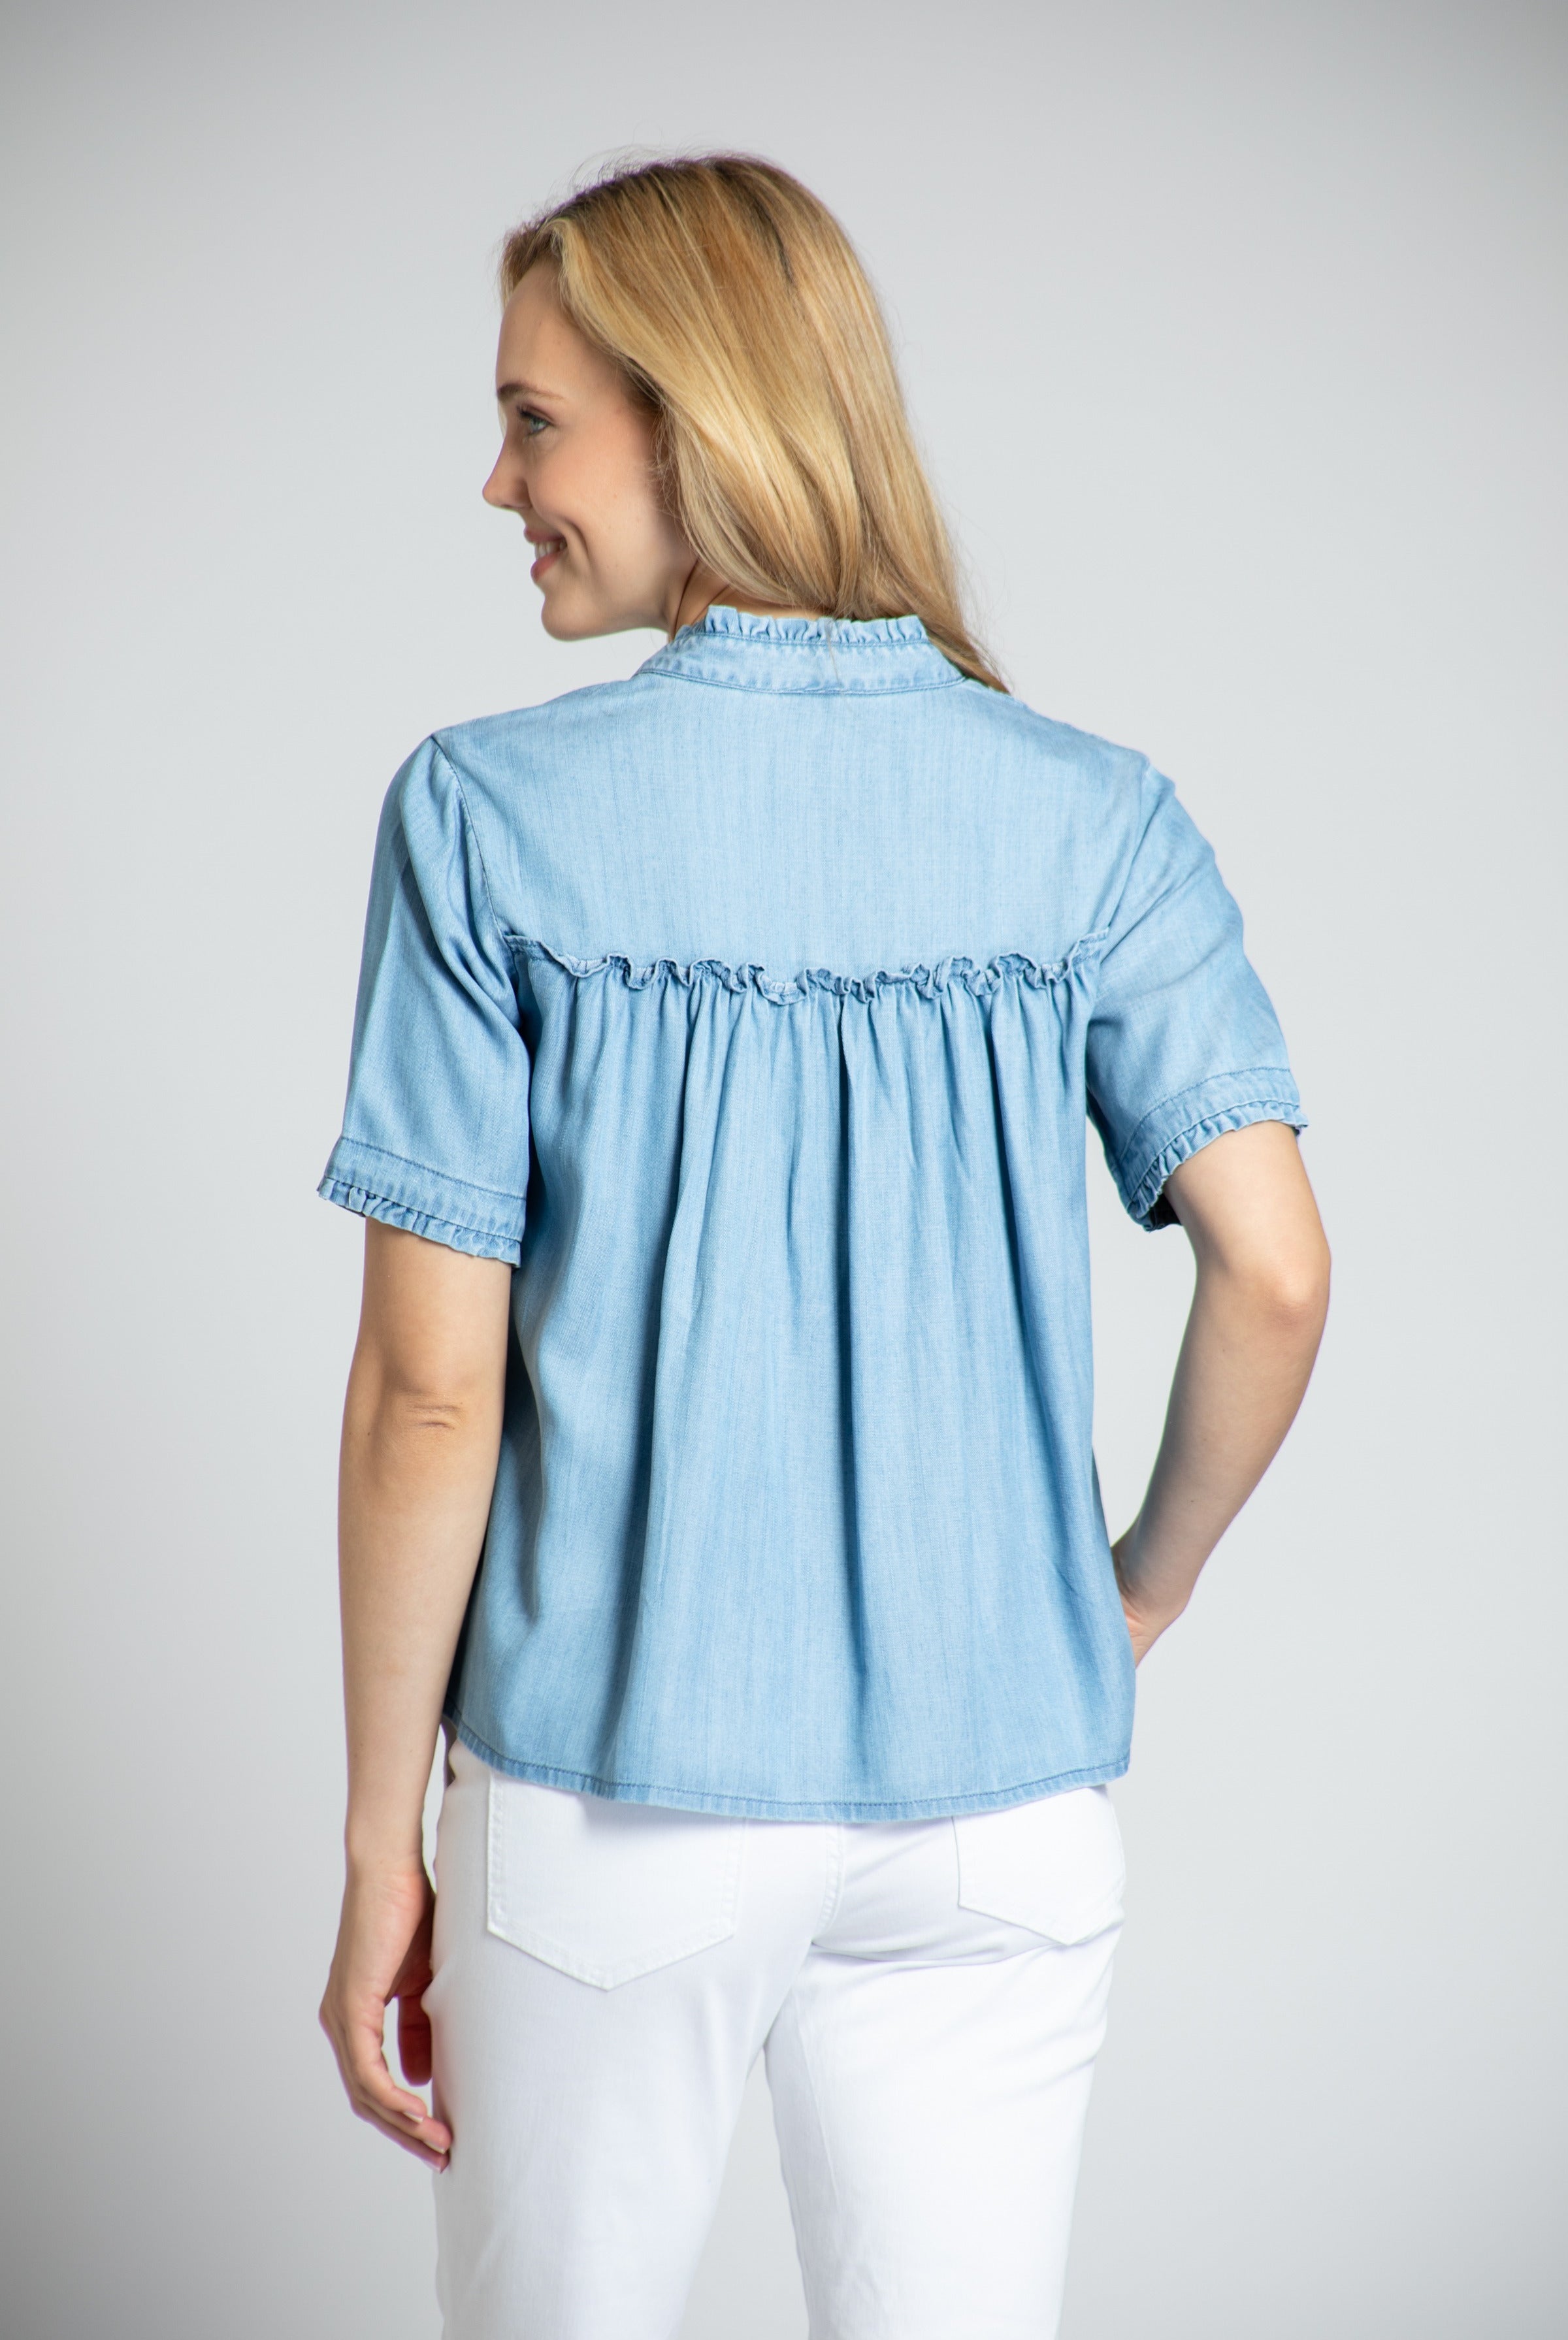 Short Sleeve Cropped Shirt With Ruffle Details - Light Indigo